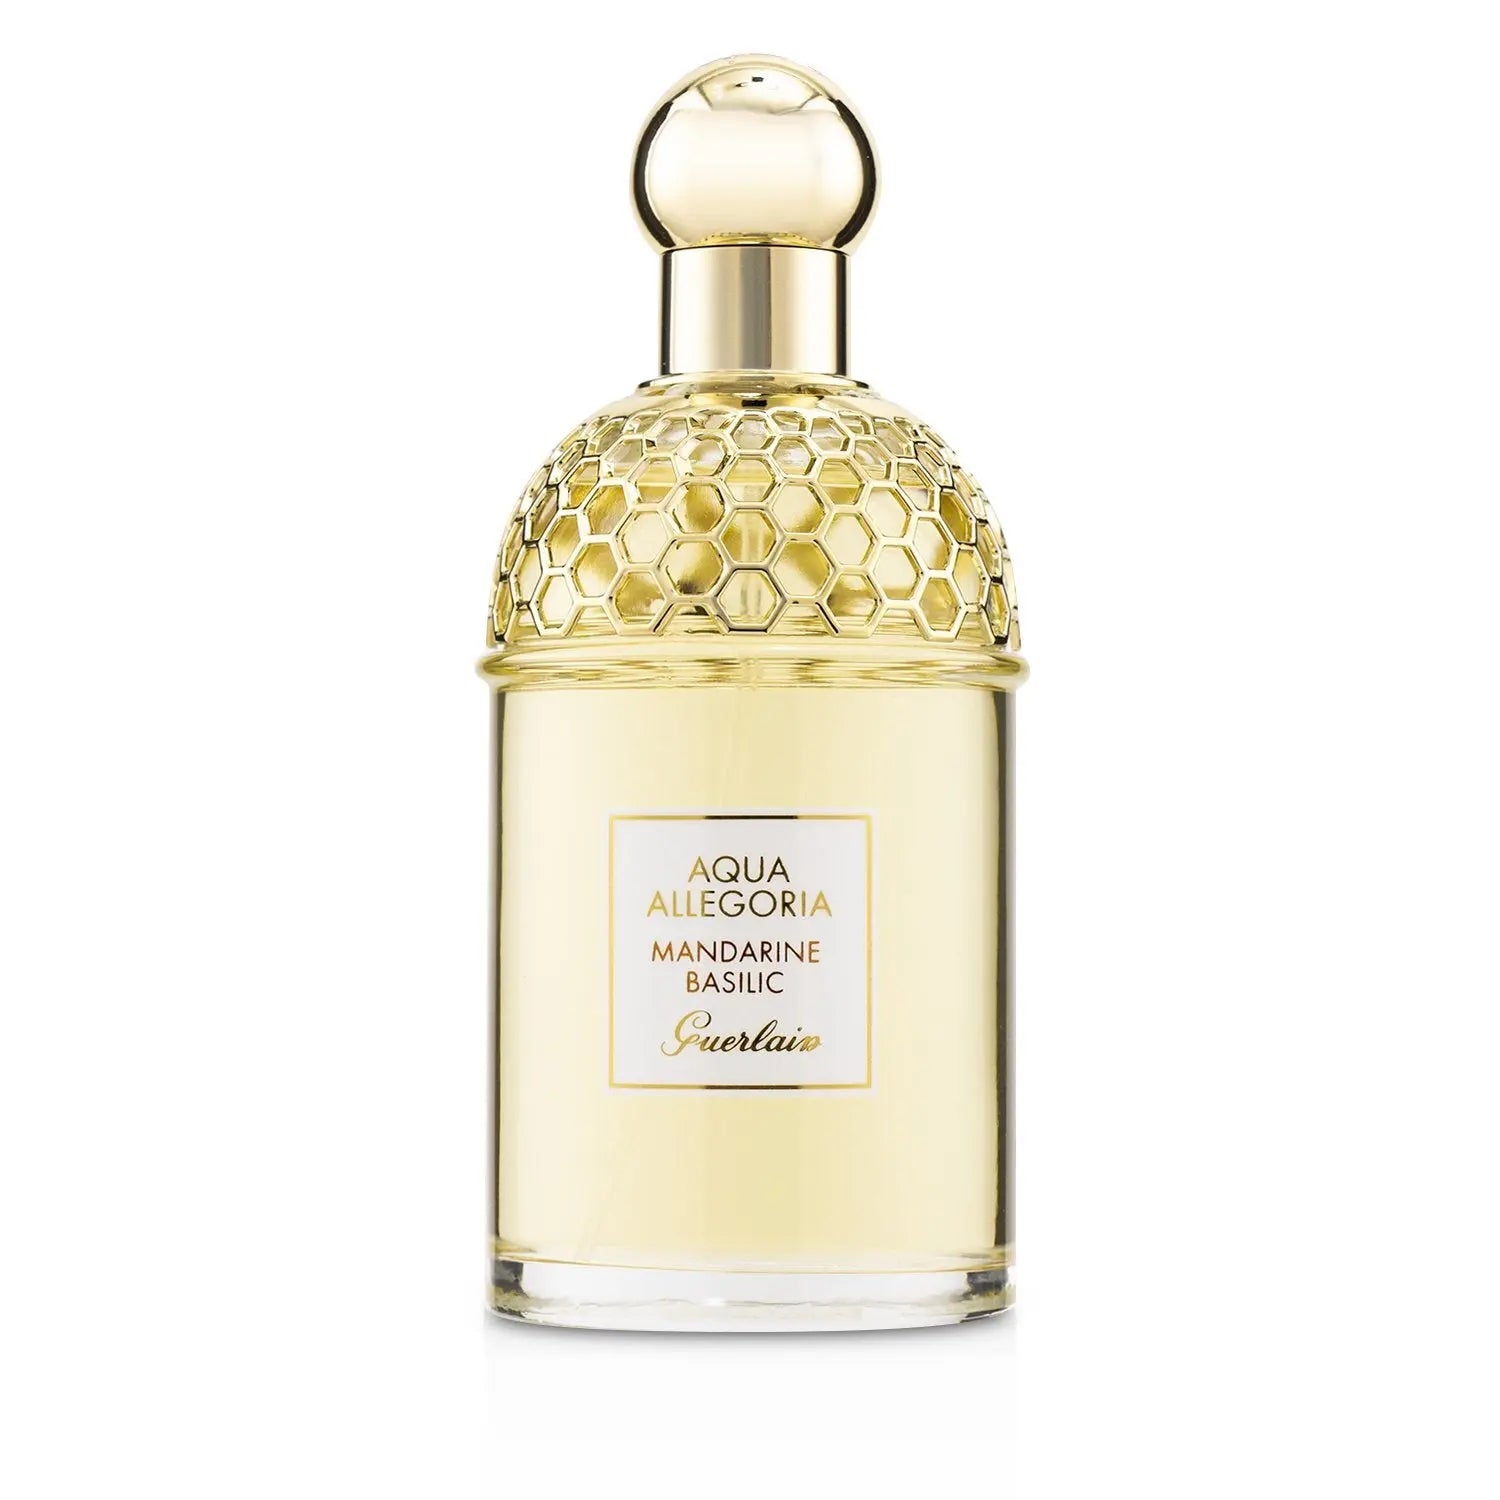 Guerlain Aqua Allegoria Mandarine Basilic EDT Women 125ml Imported Perfumes & Beauty Store